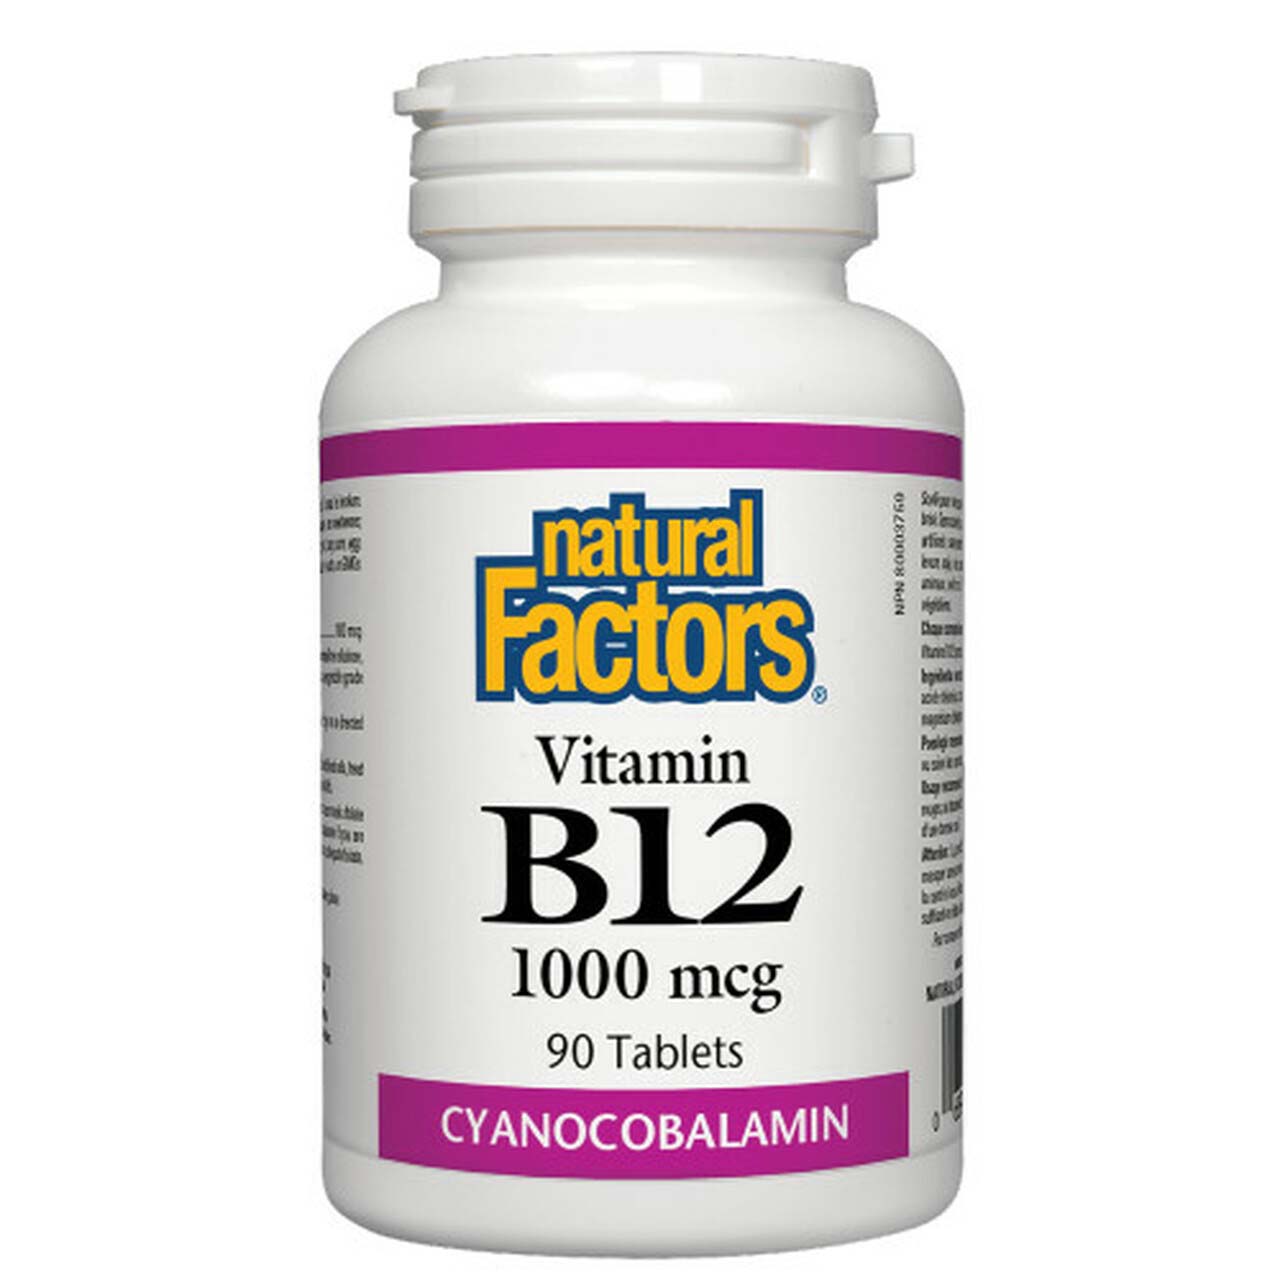 Natural Factors Vitamin B12, 1000 mcg, 90 Tablets